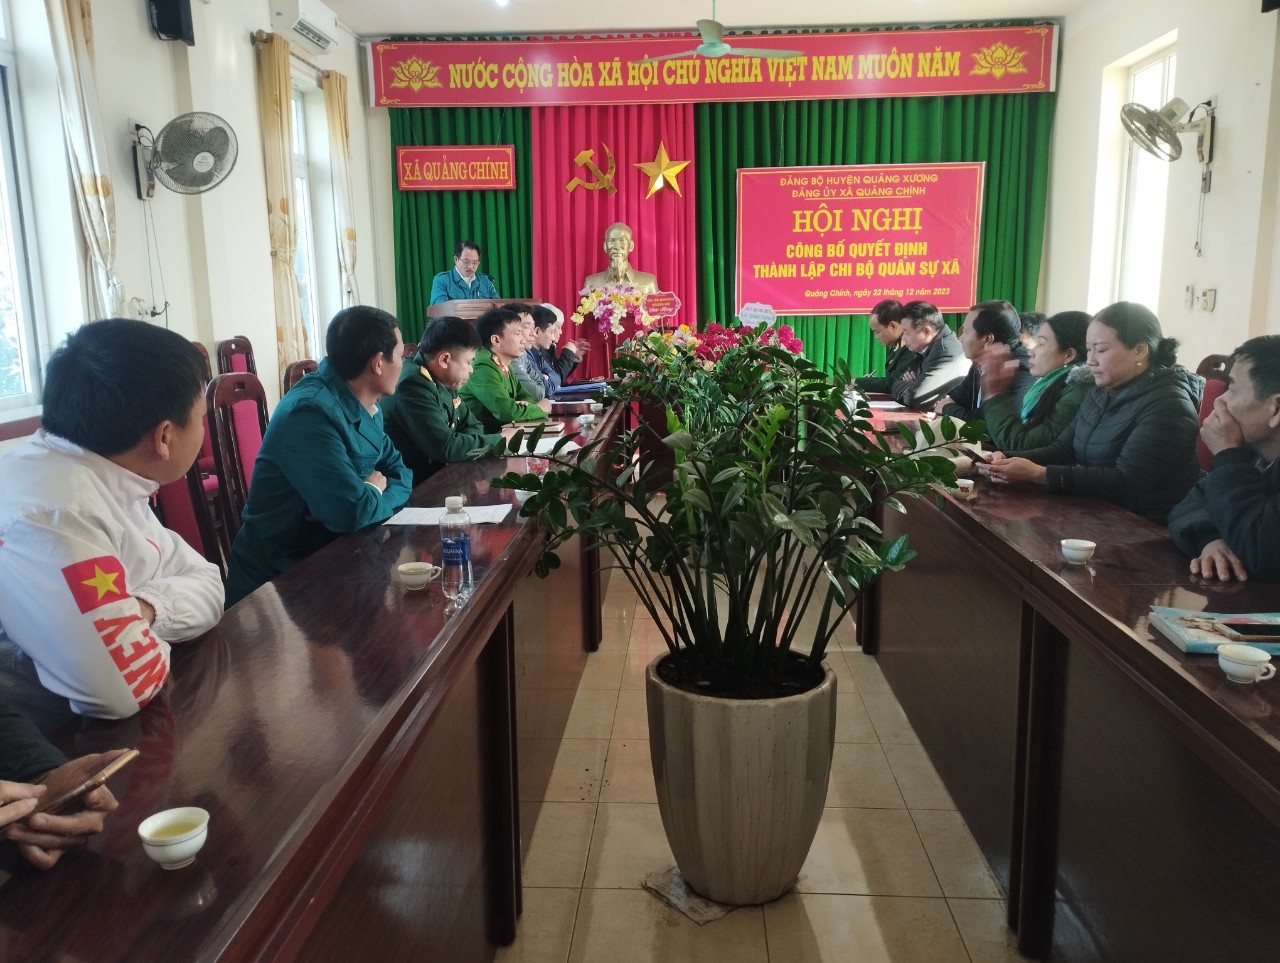 Đảng ủy xã Quảng Chính tổ chức Hội nghị Công bố quyết định thành lập Chi bộ quân sự xã Quảng Chính